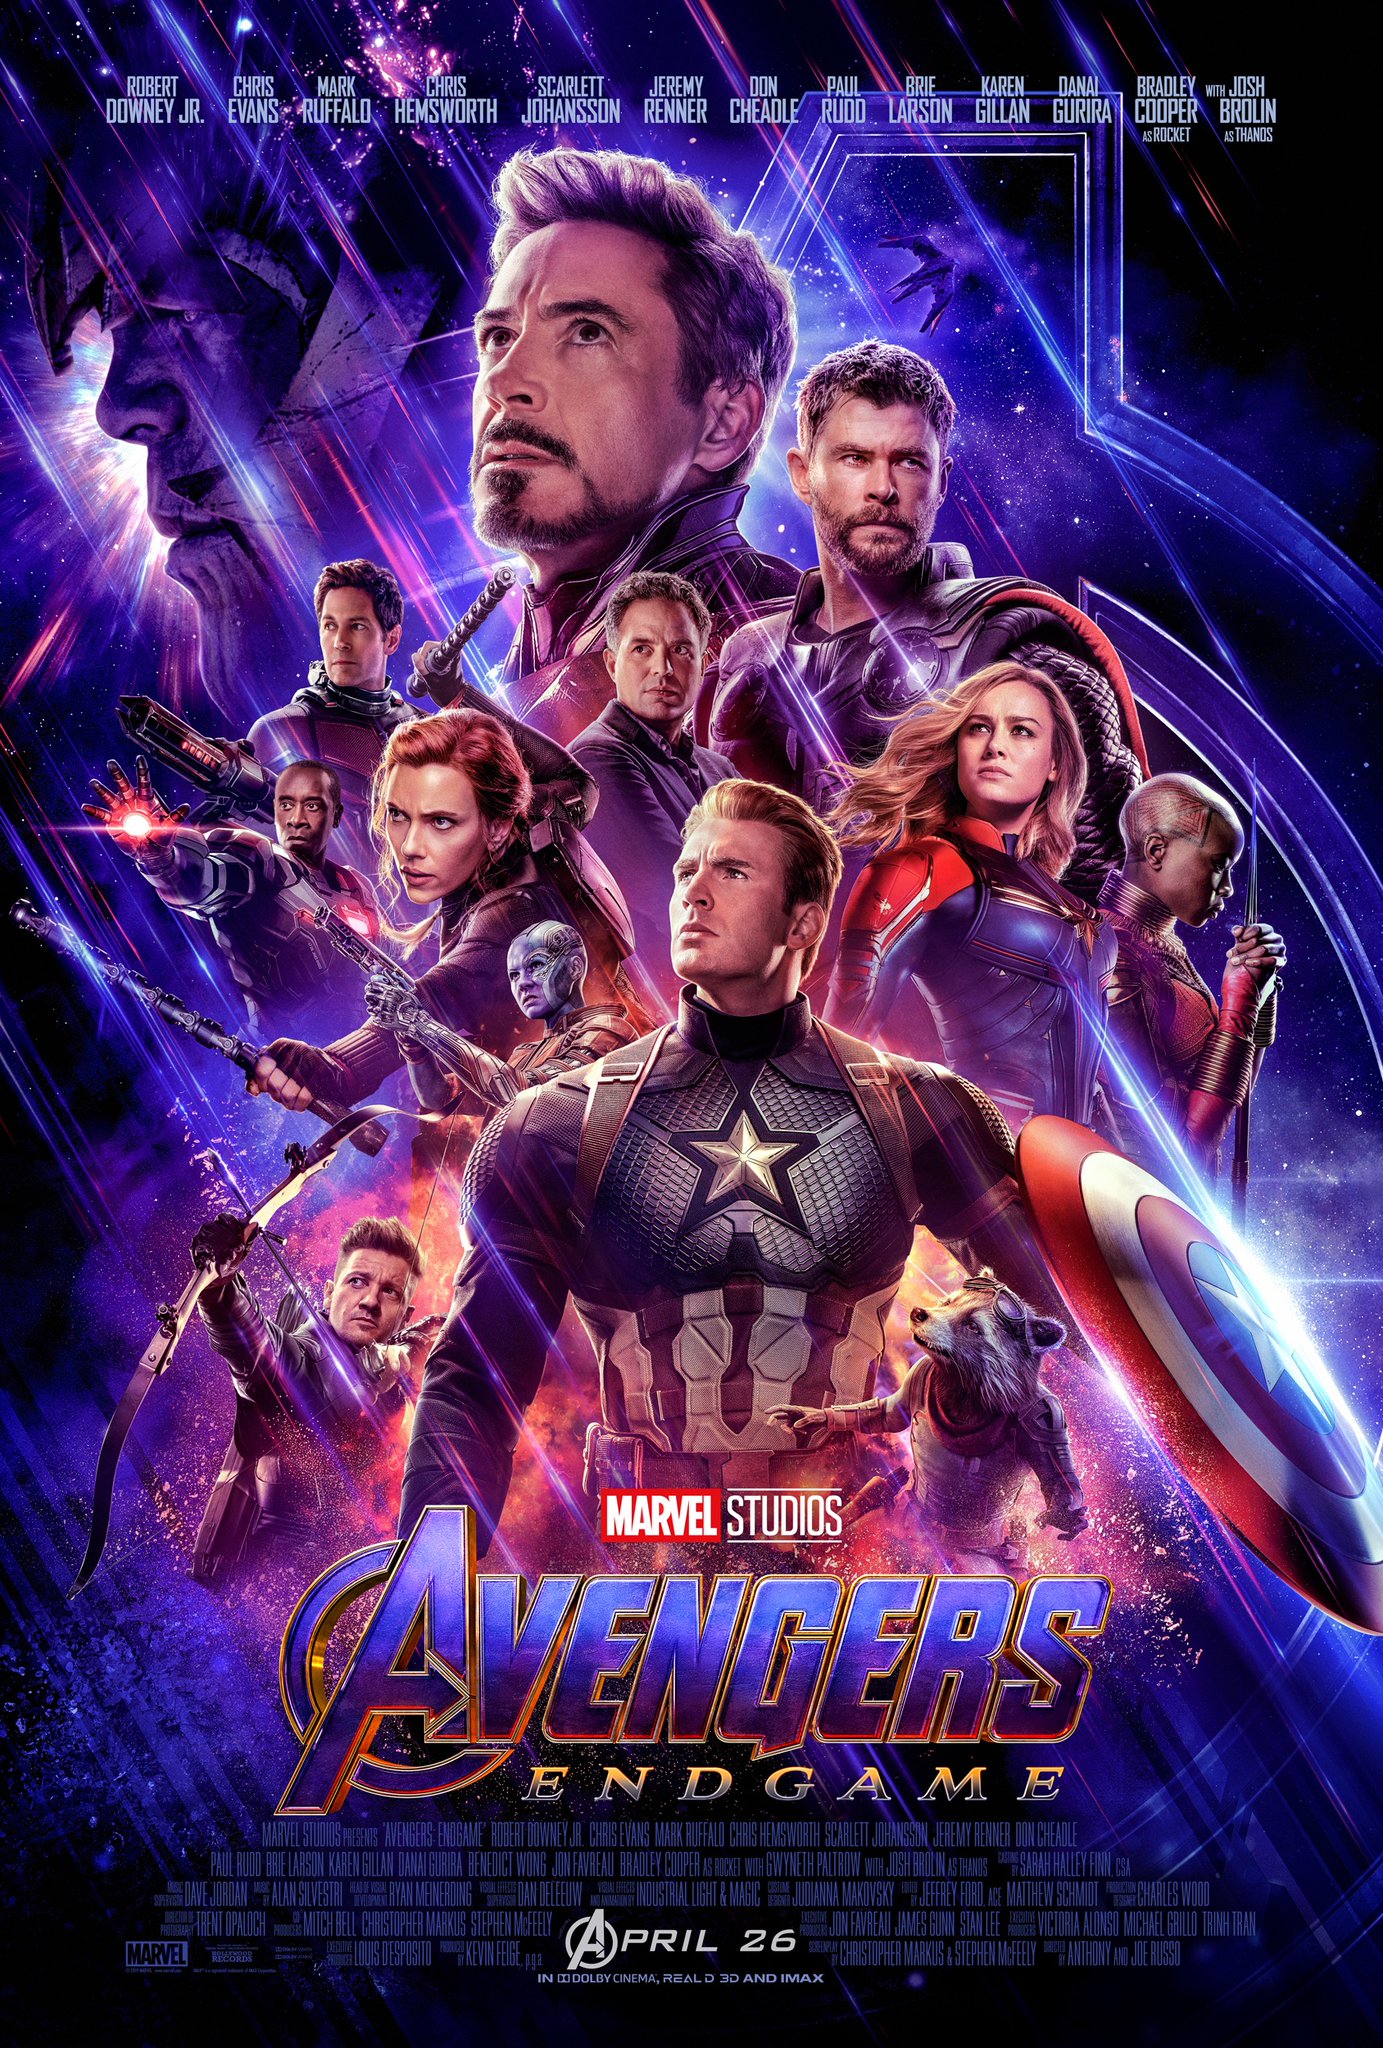 Avengers Endgame Movie Poster 2